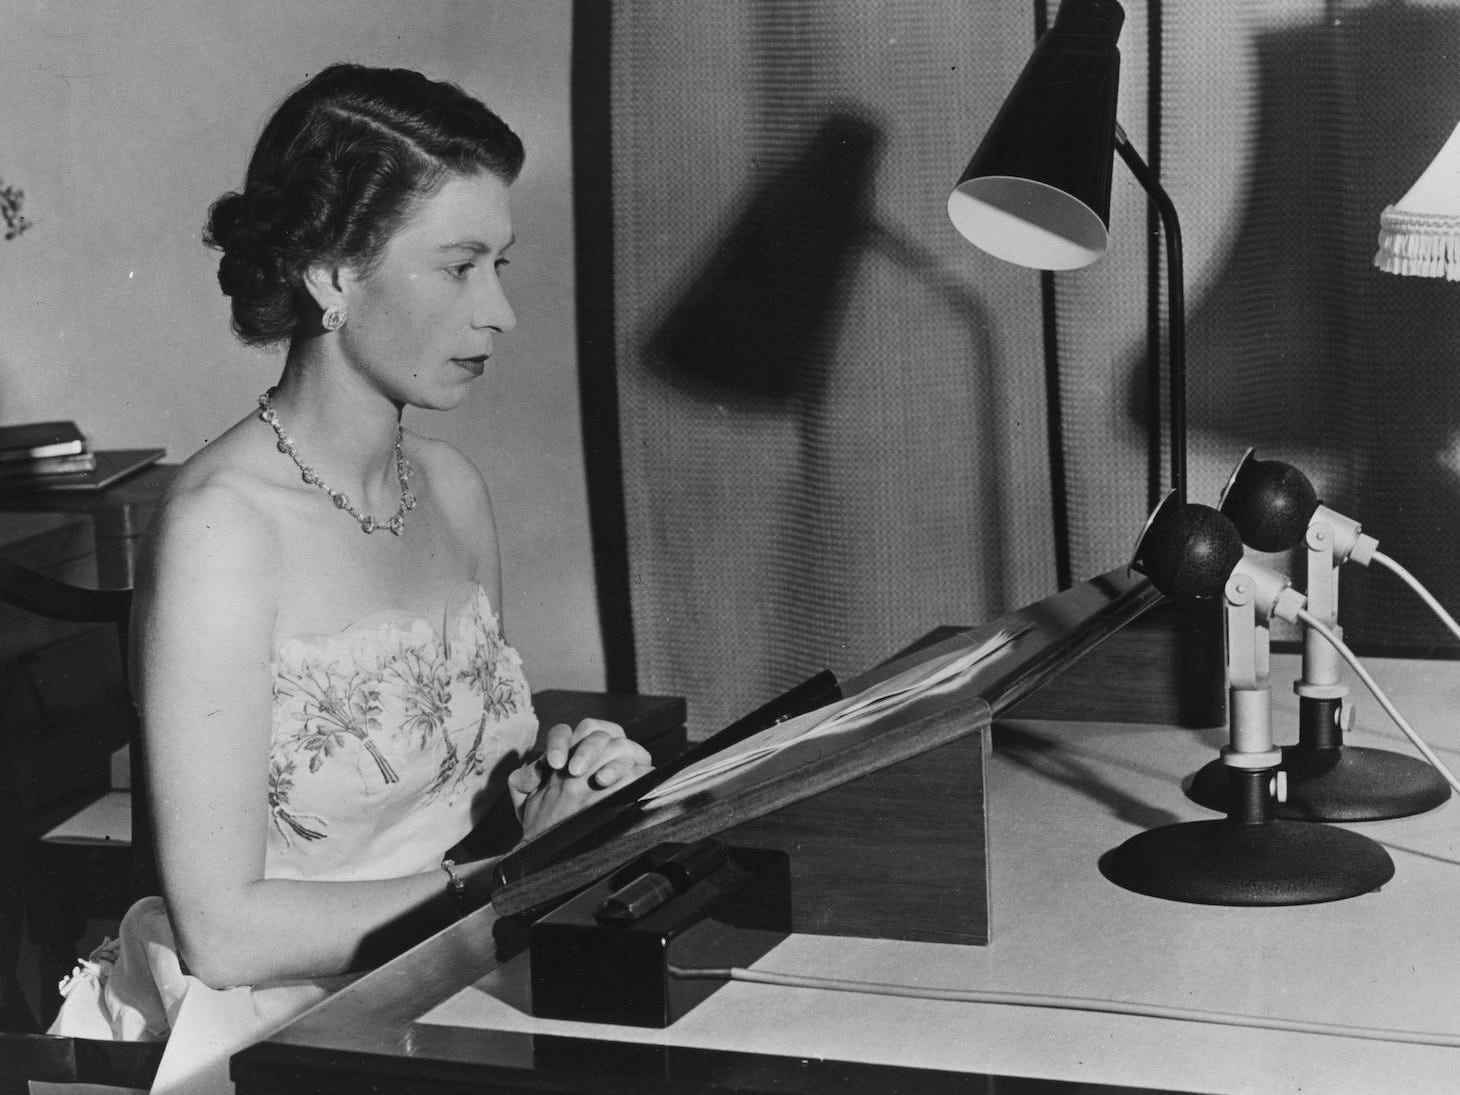 Königin Elizabeth II. macht während einer königlichen Tour durch Australasien im Jahr 1953 eine Radiosendung aus Auckland, Neuseeland.